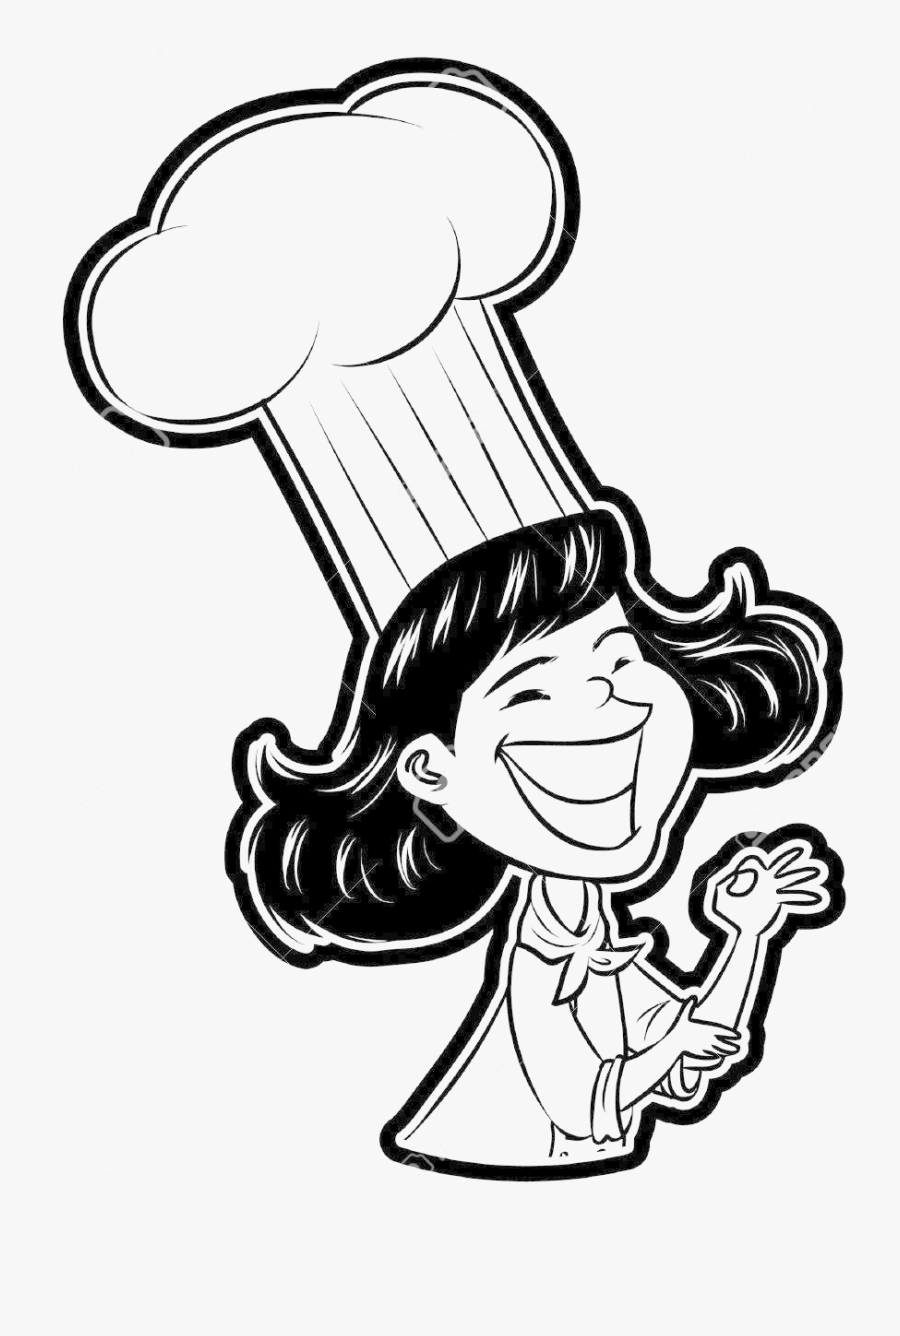 Transparent Chef Hat Clipart Transparent - Transparent Background Chef Logos, Transparent Clipart